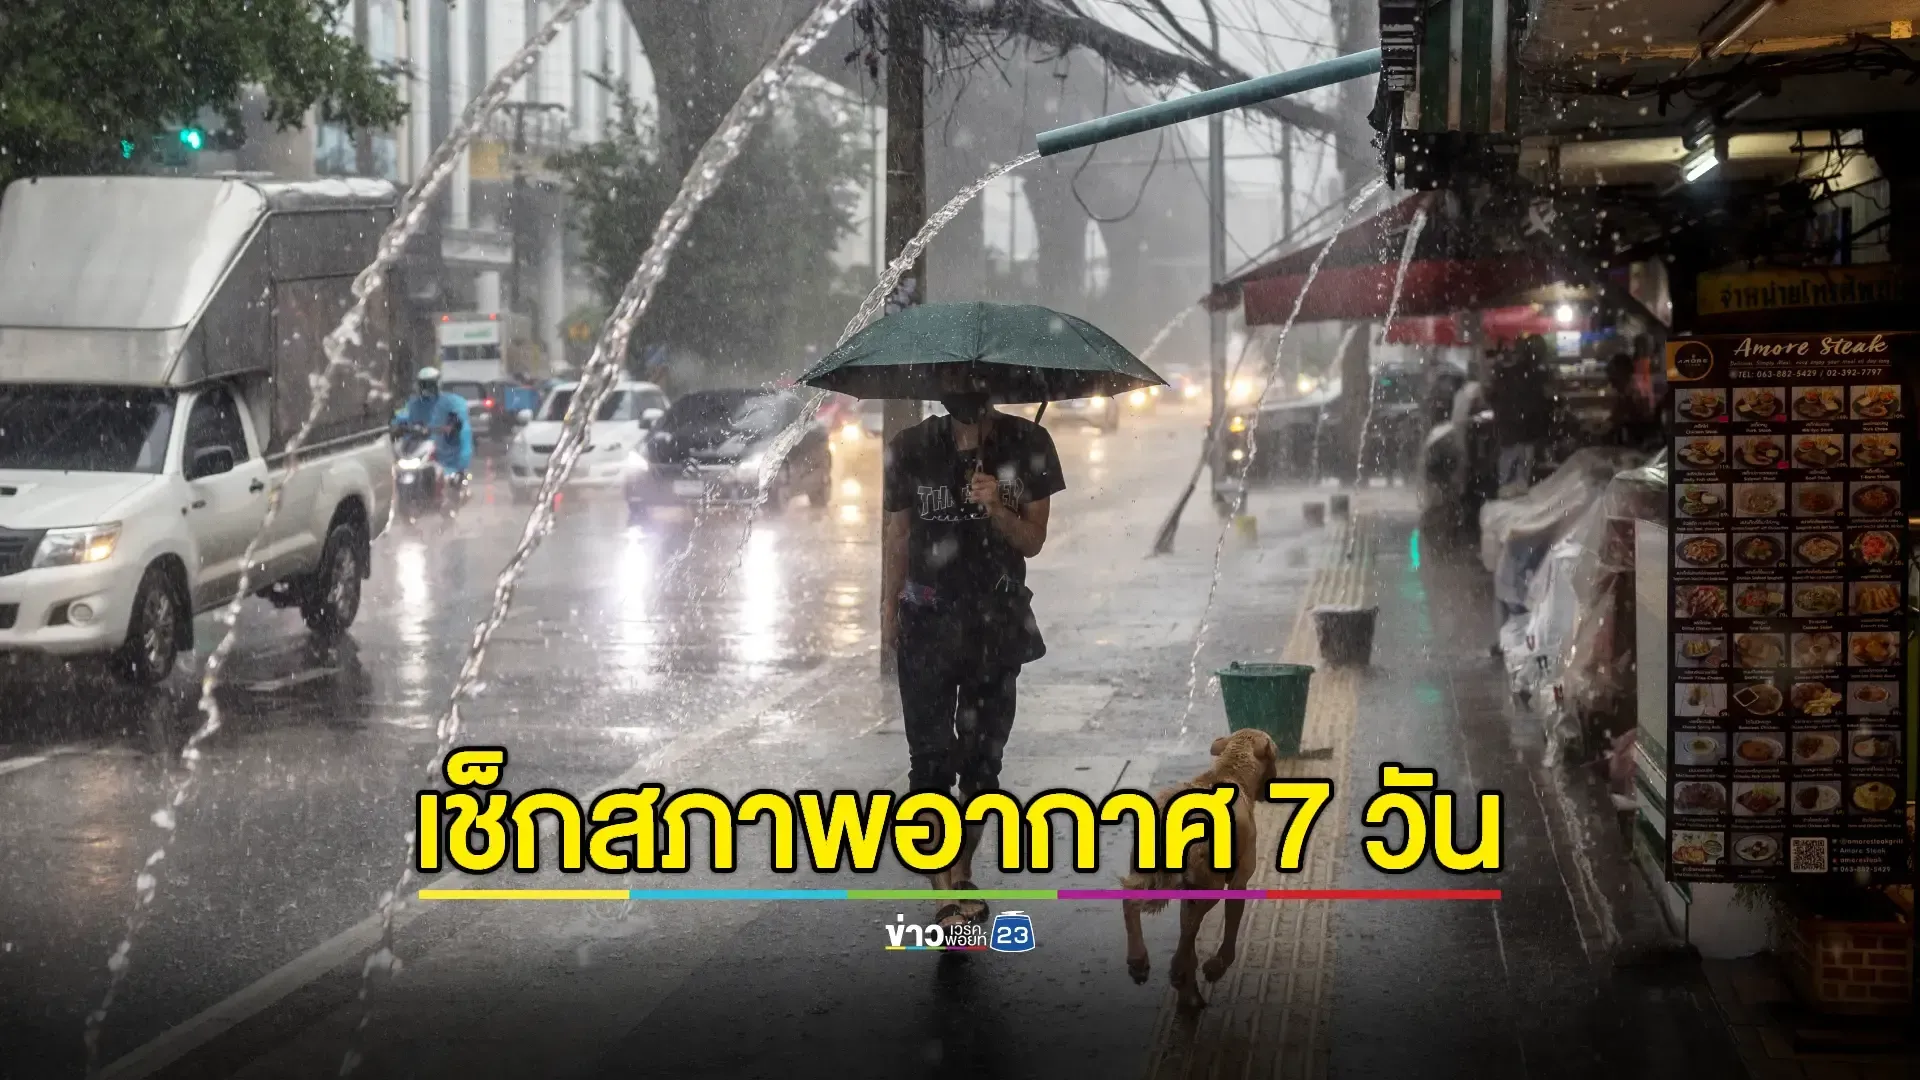 กรมอุตุฯ เตือน "ทั่วไทยฝนเพิ่ม" กทม. ฝนฟ้าคะนองร้อยละ 60 